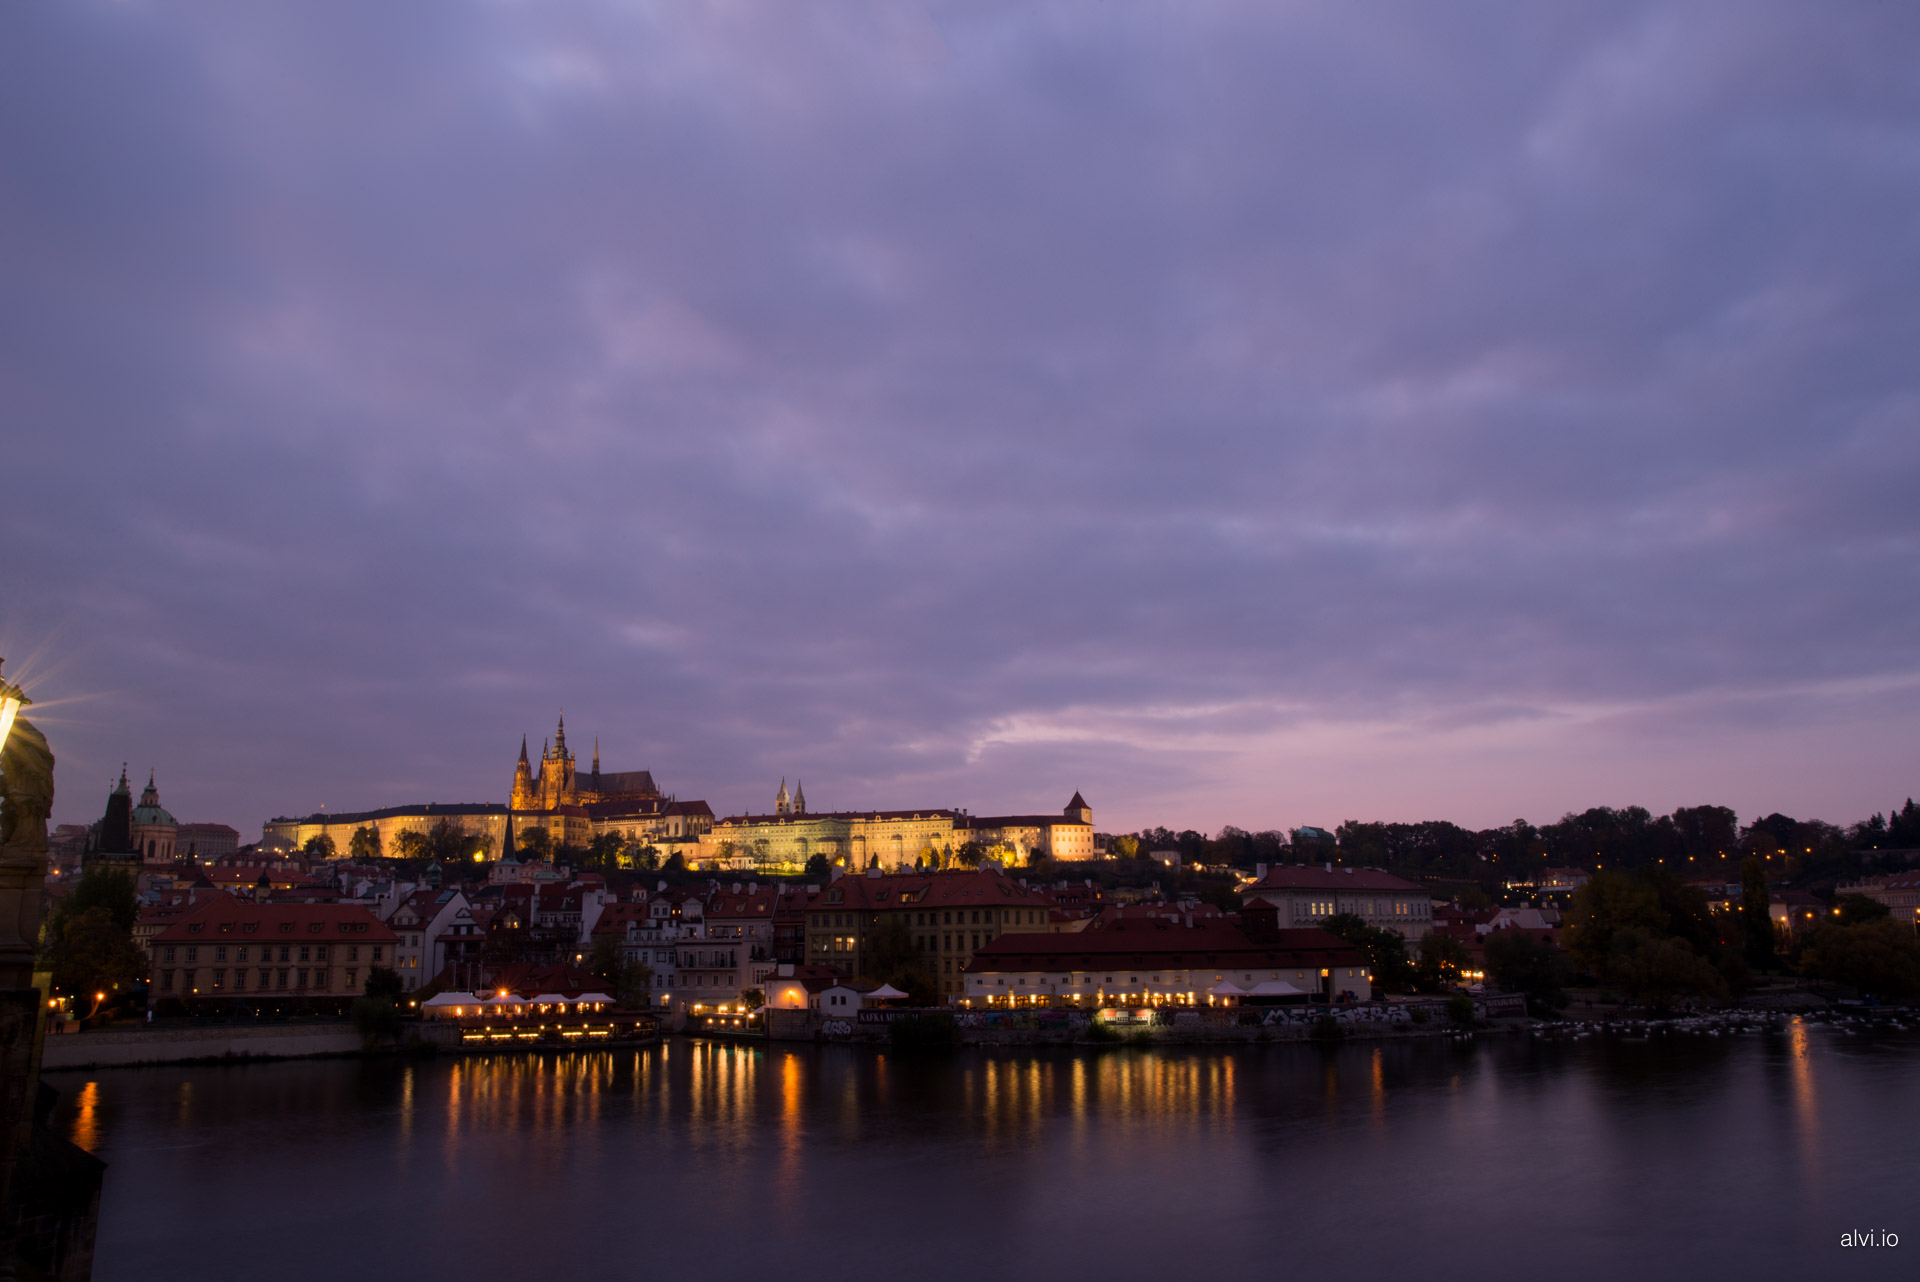 Prague, taken from its Charles Bridge